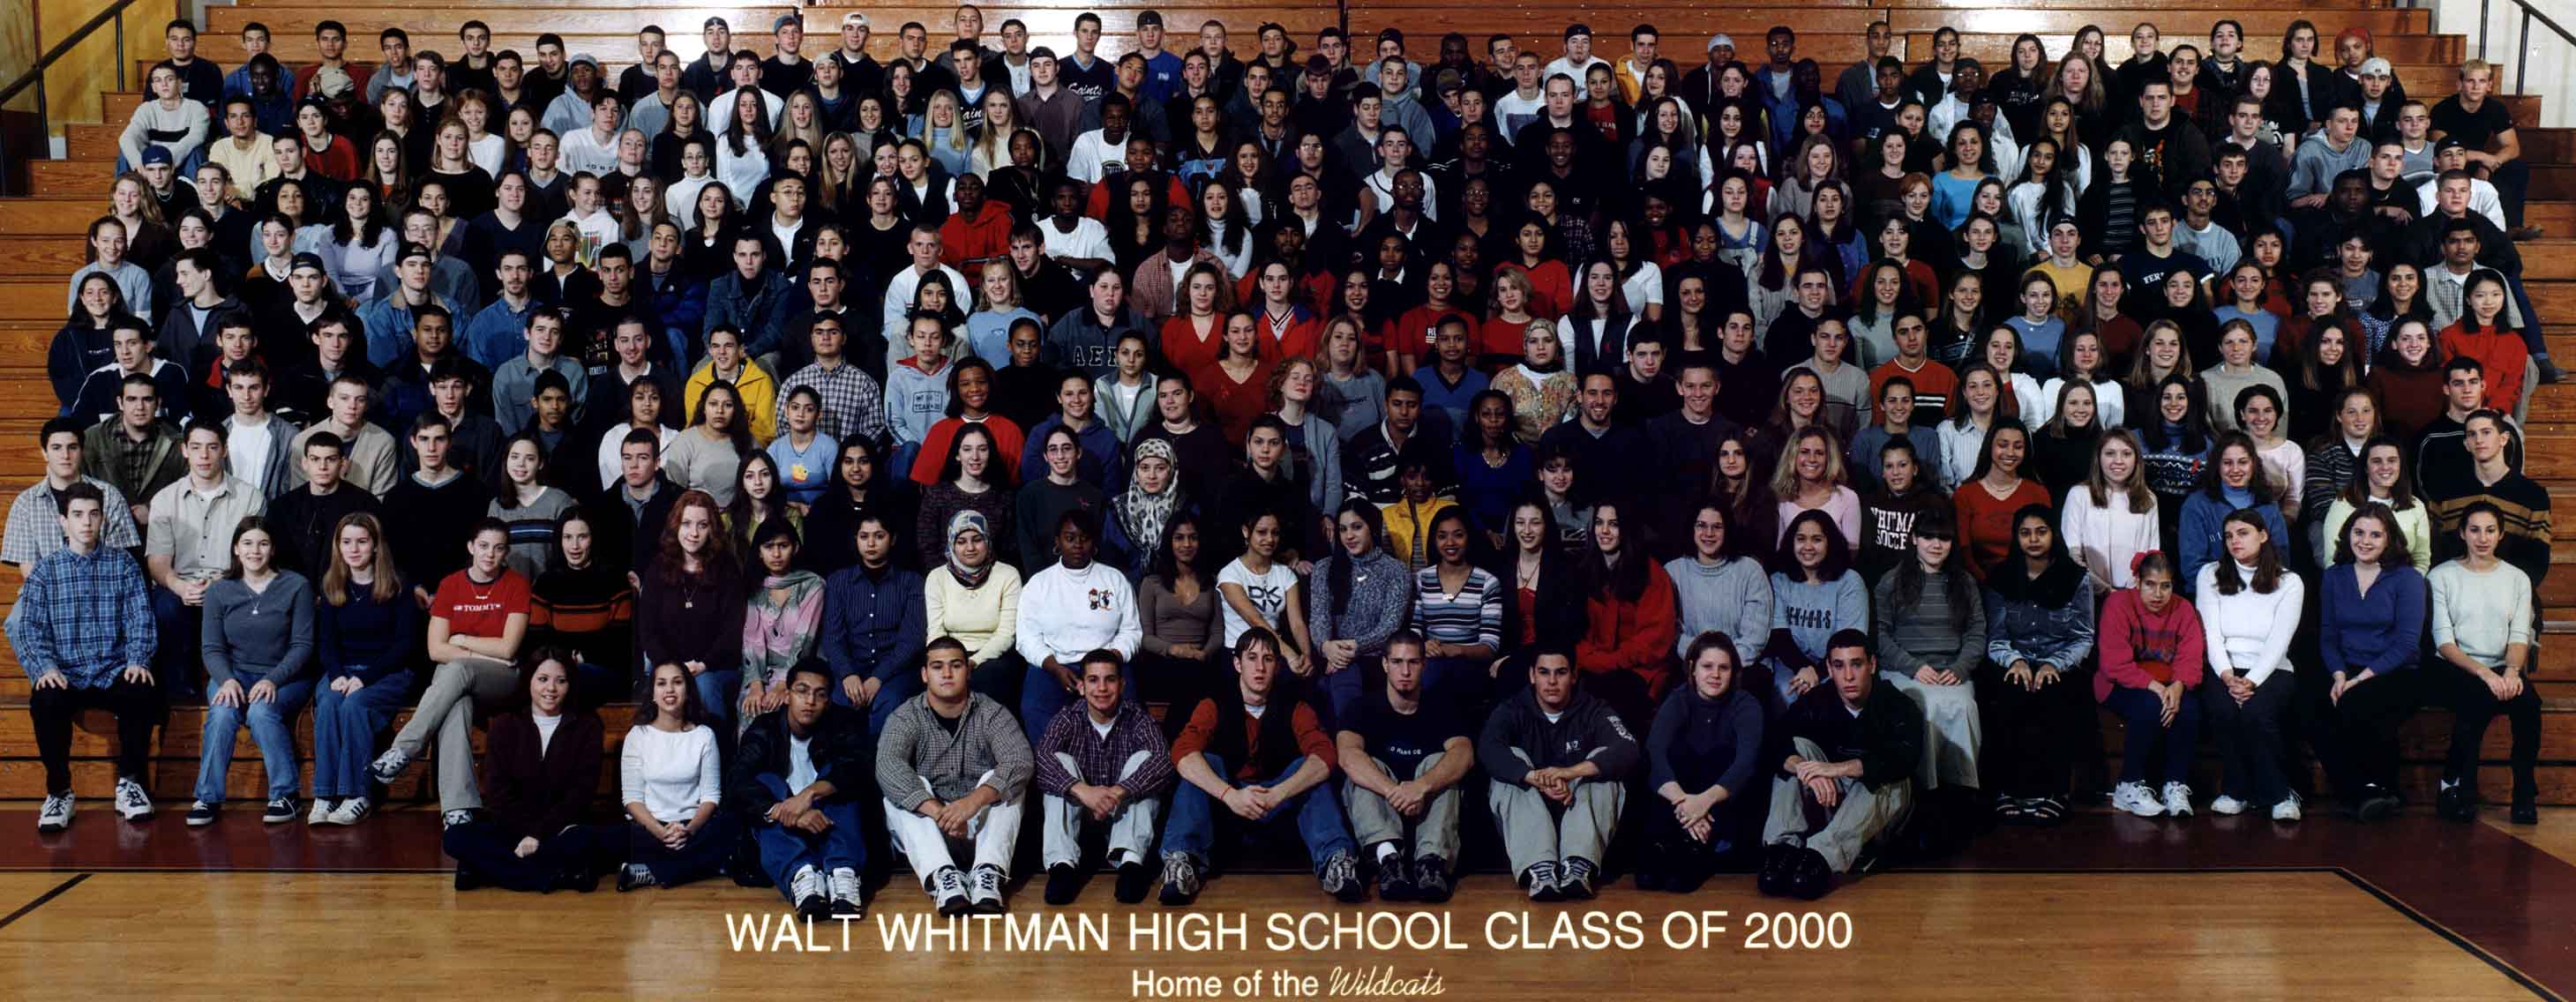 Walt Whitman High School foto